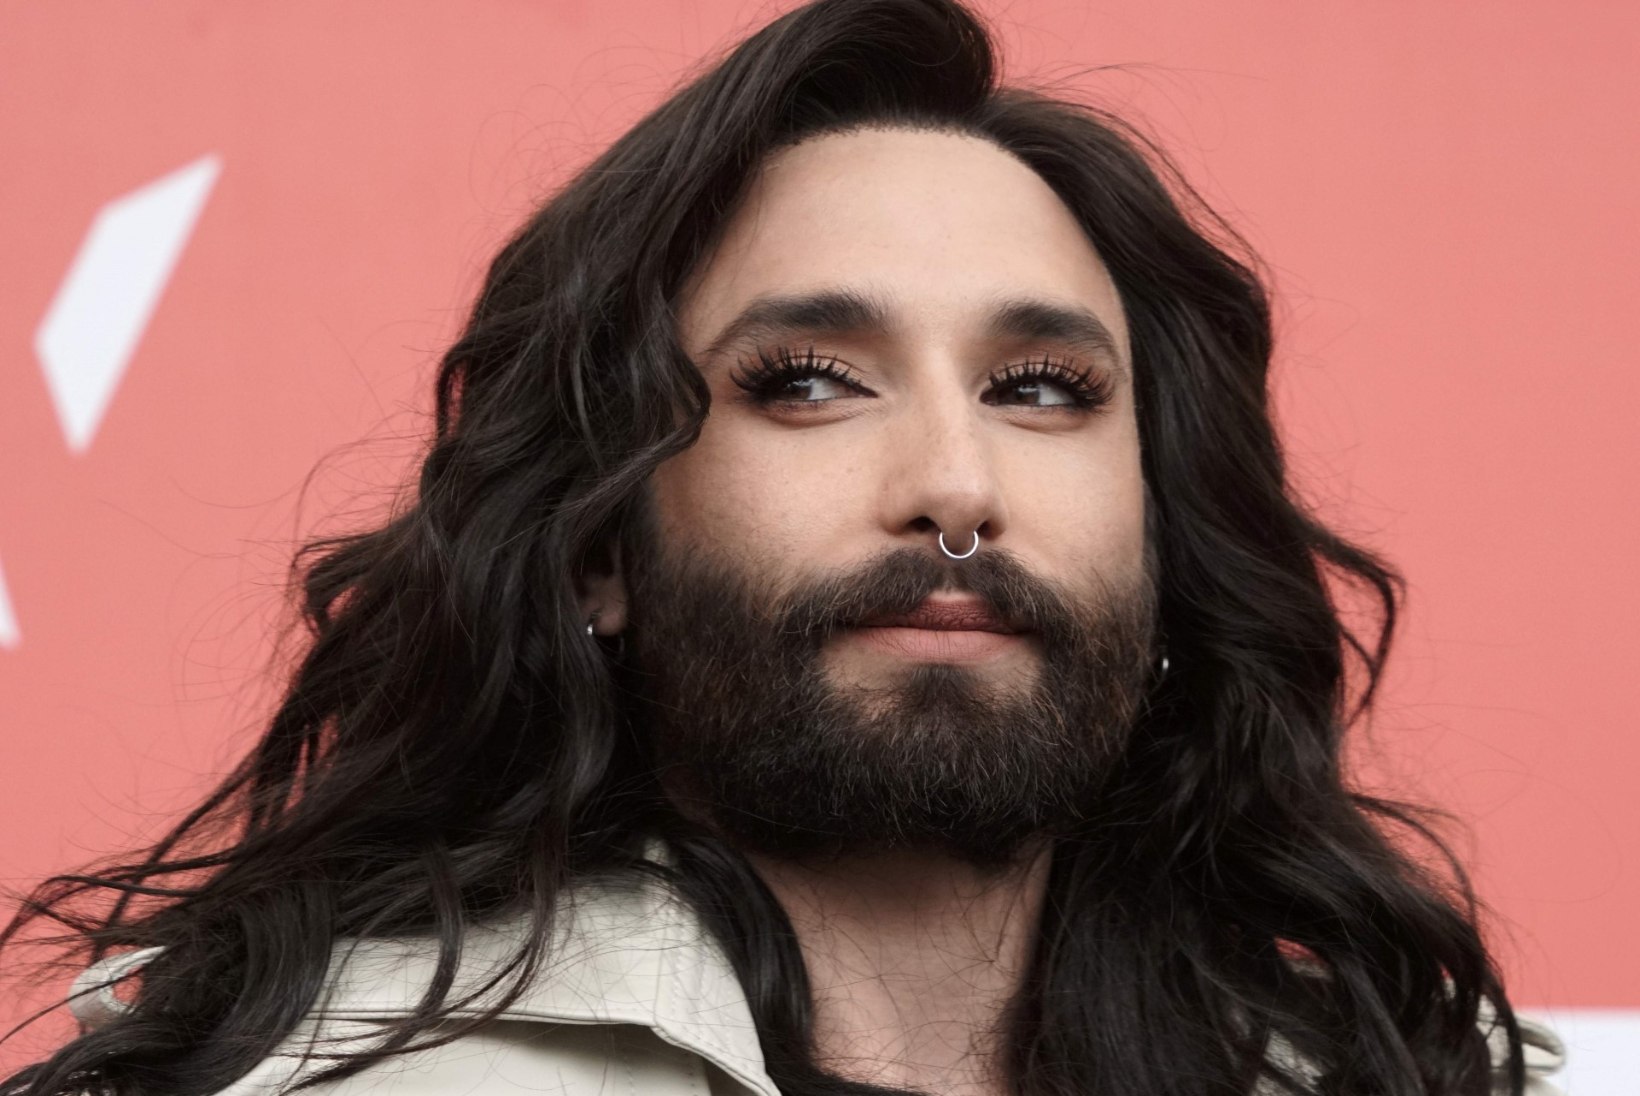 POMMUUDIS: Eurovisioni võitja Conchita Wurst on HIV-positiivne!